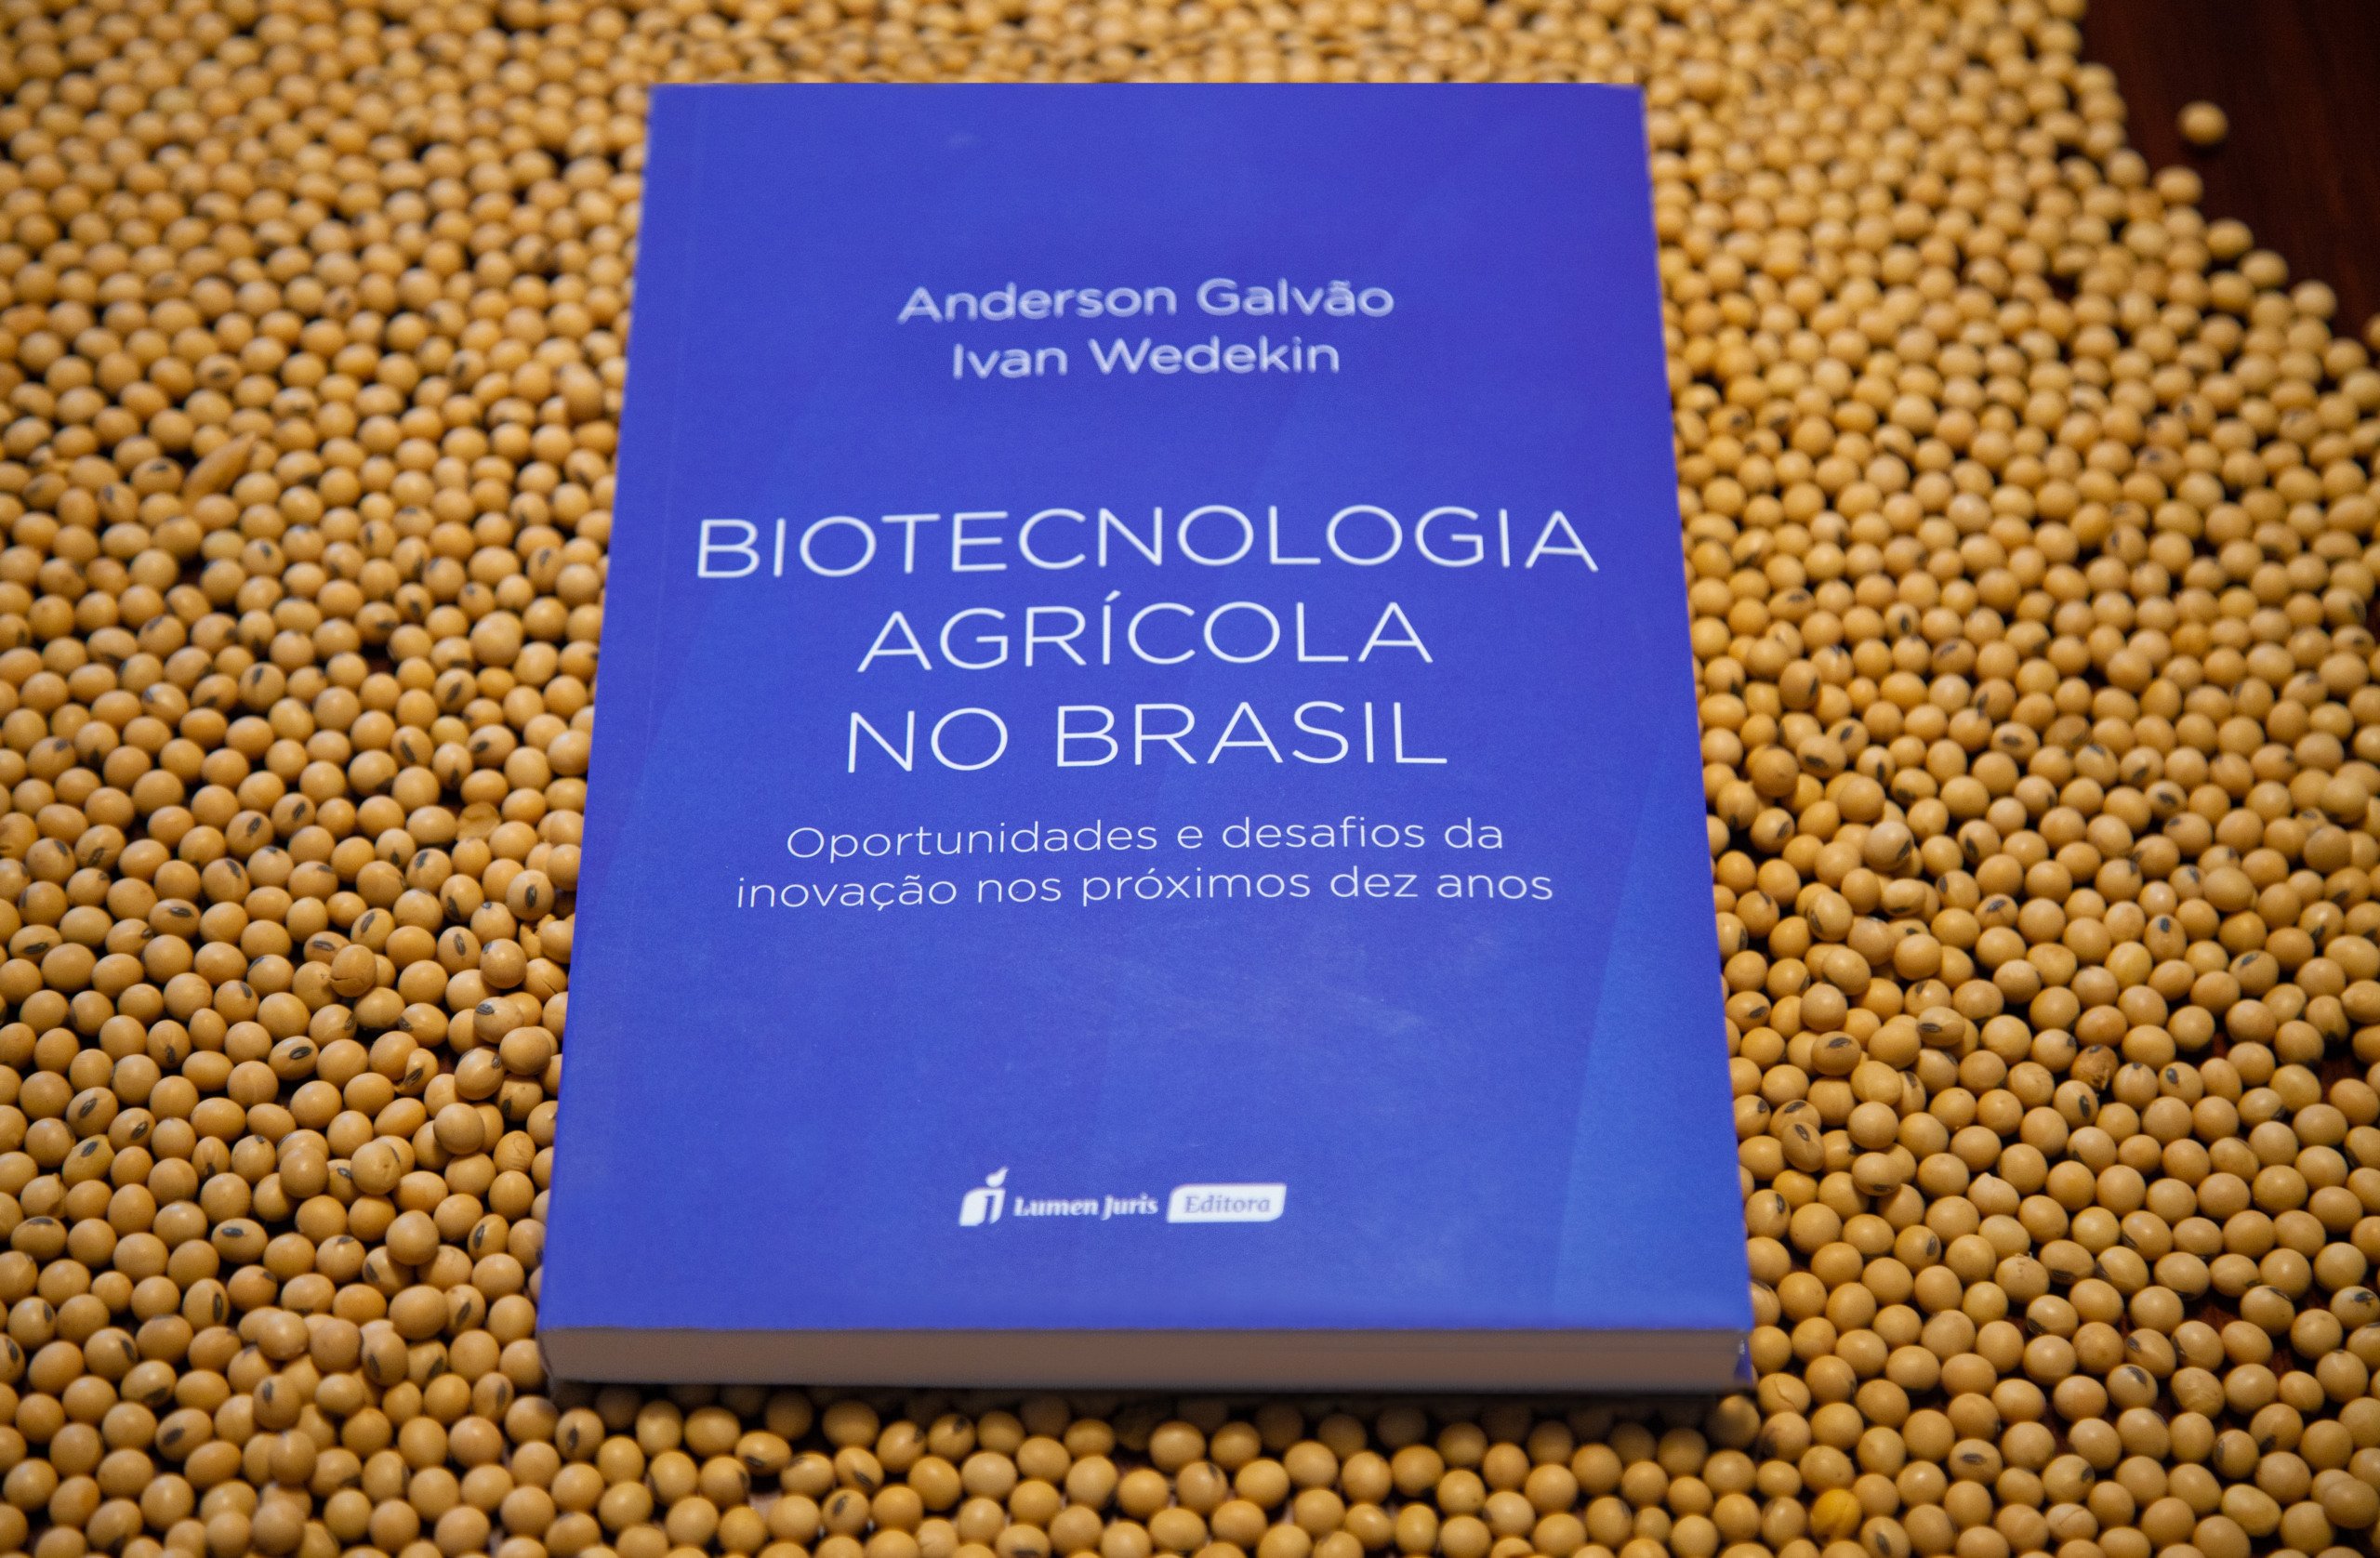 Biotecnologia Agrícola no Brasil: Oportunidades e desafios da inovação nos próximos dez anos